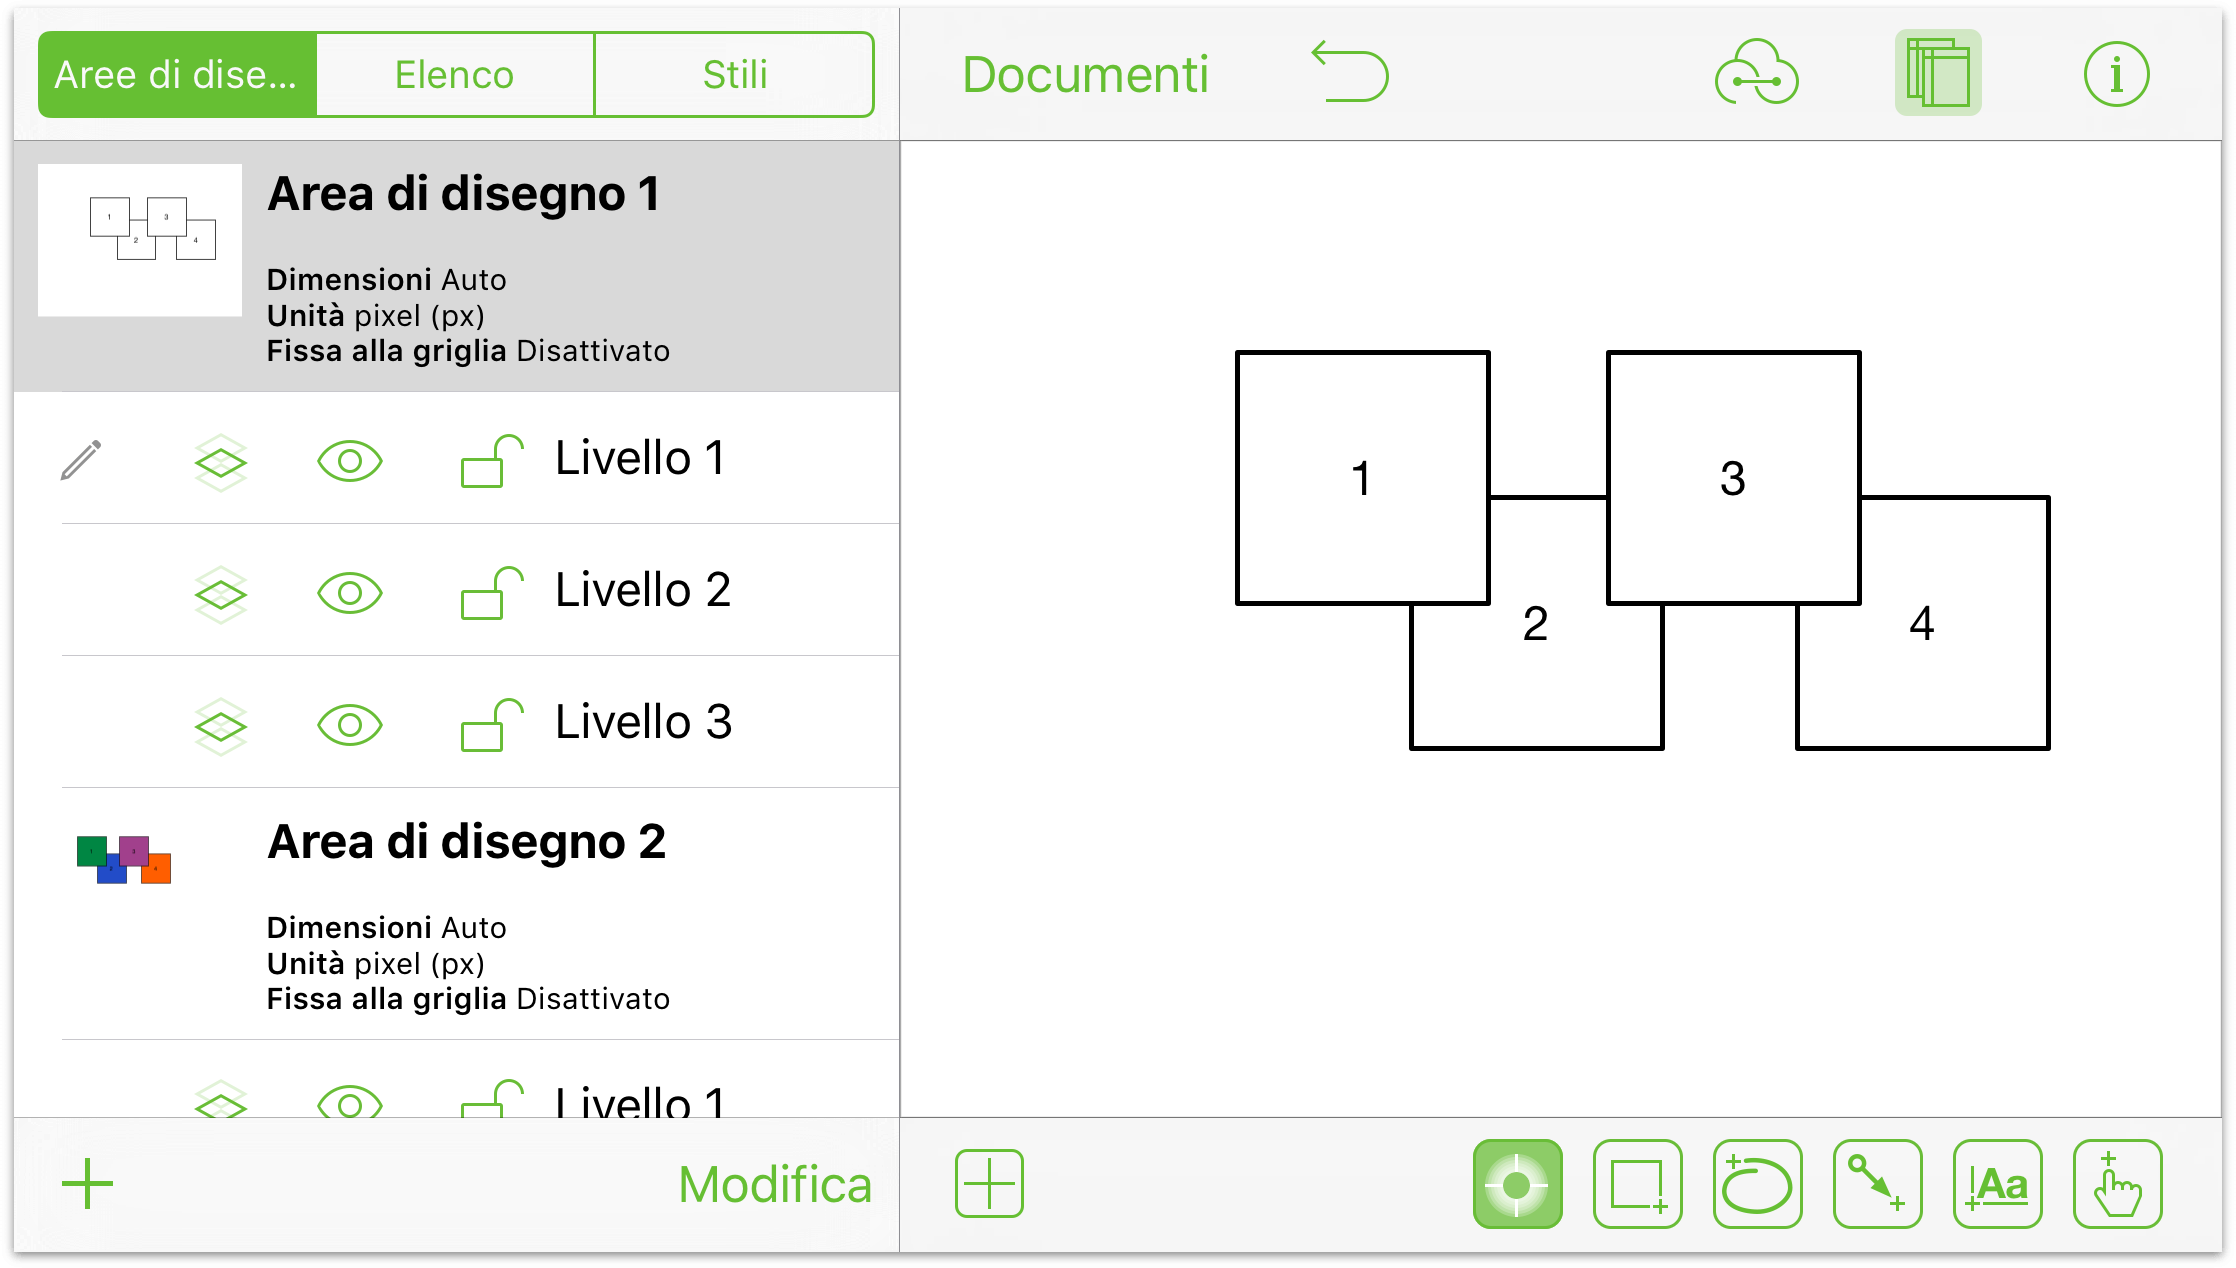 Il documento OmniGraffle, con due aree di disegno e tre livelli nell'Area di disegno 1